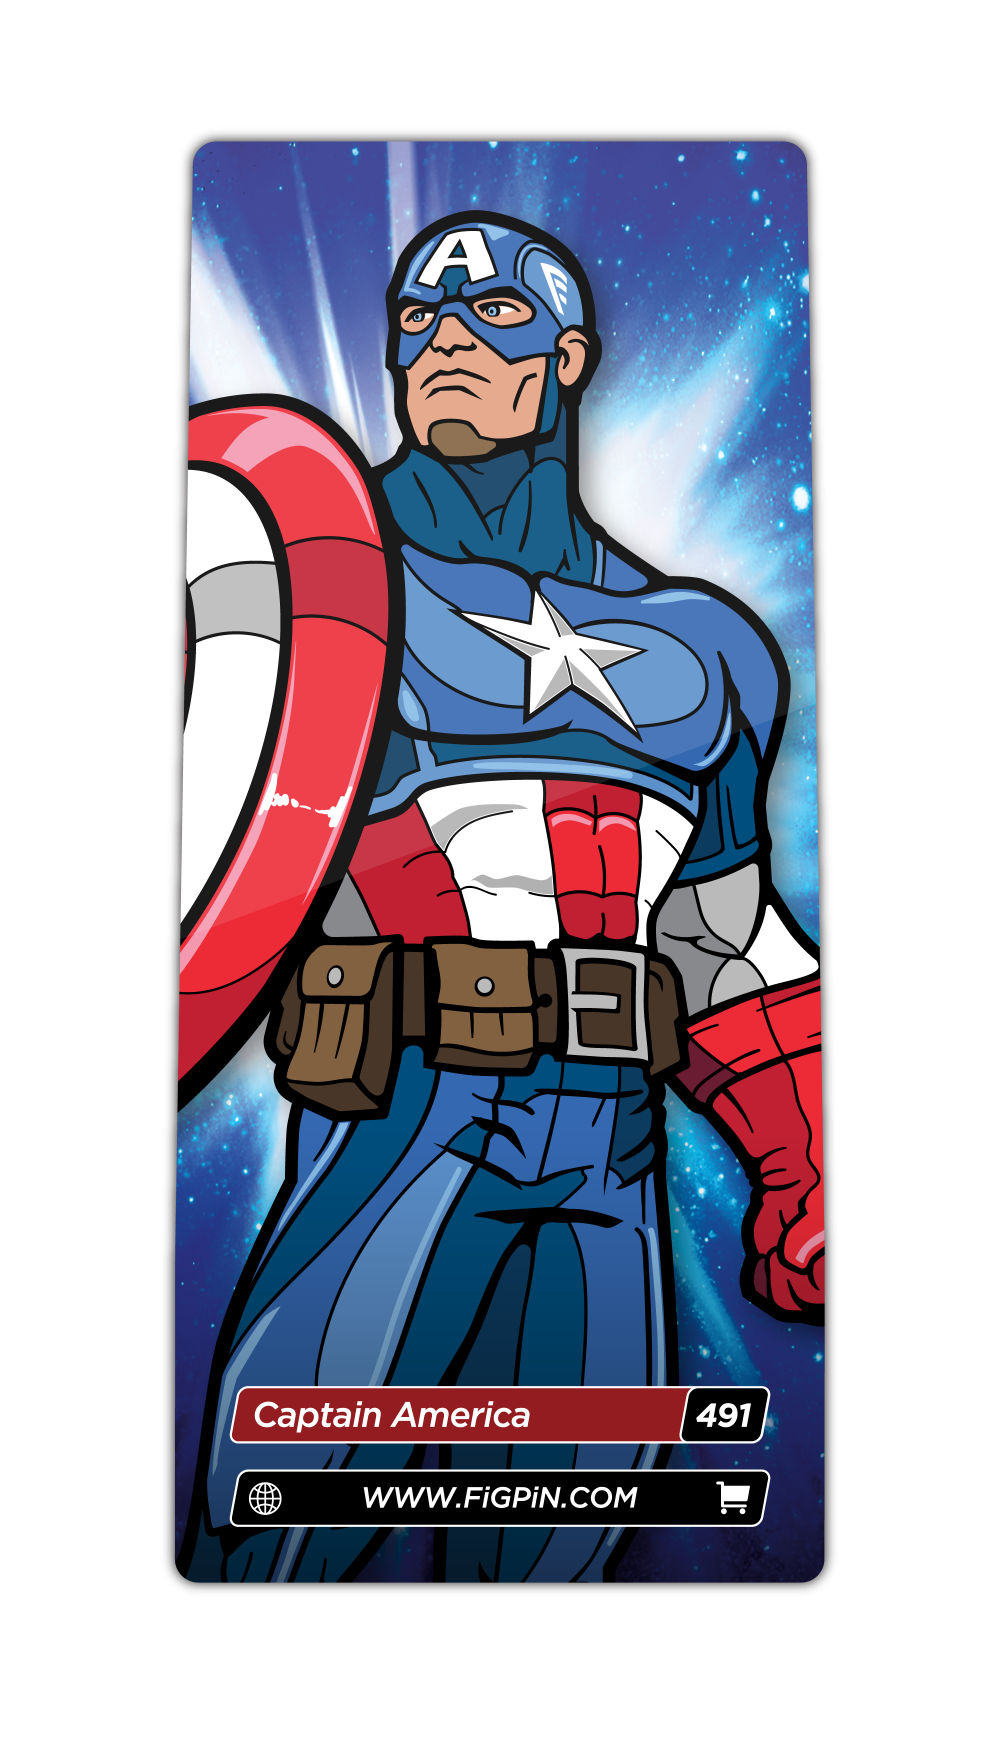 Captain America (491)